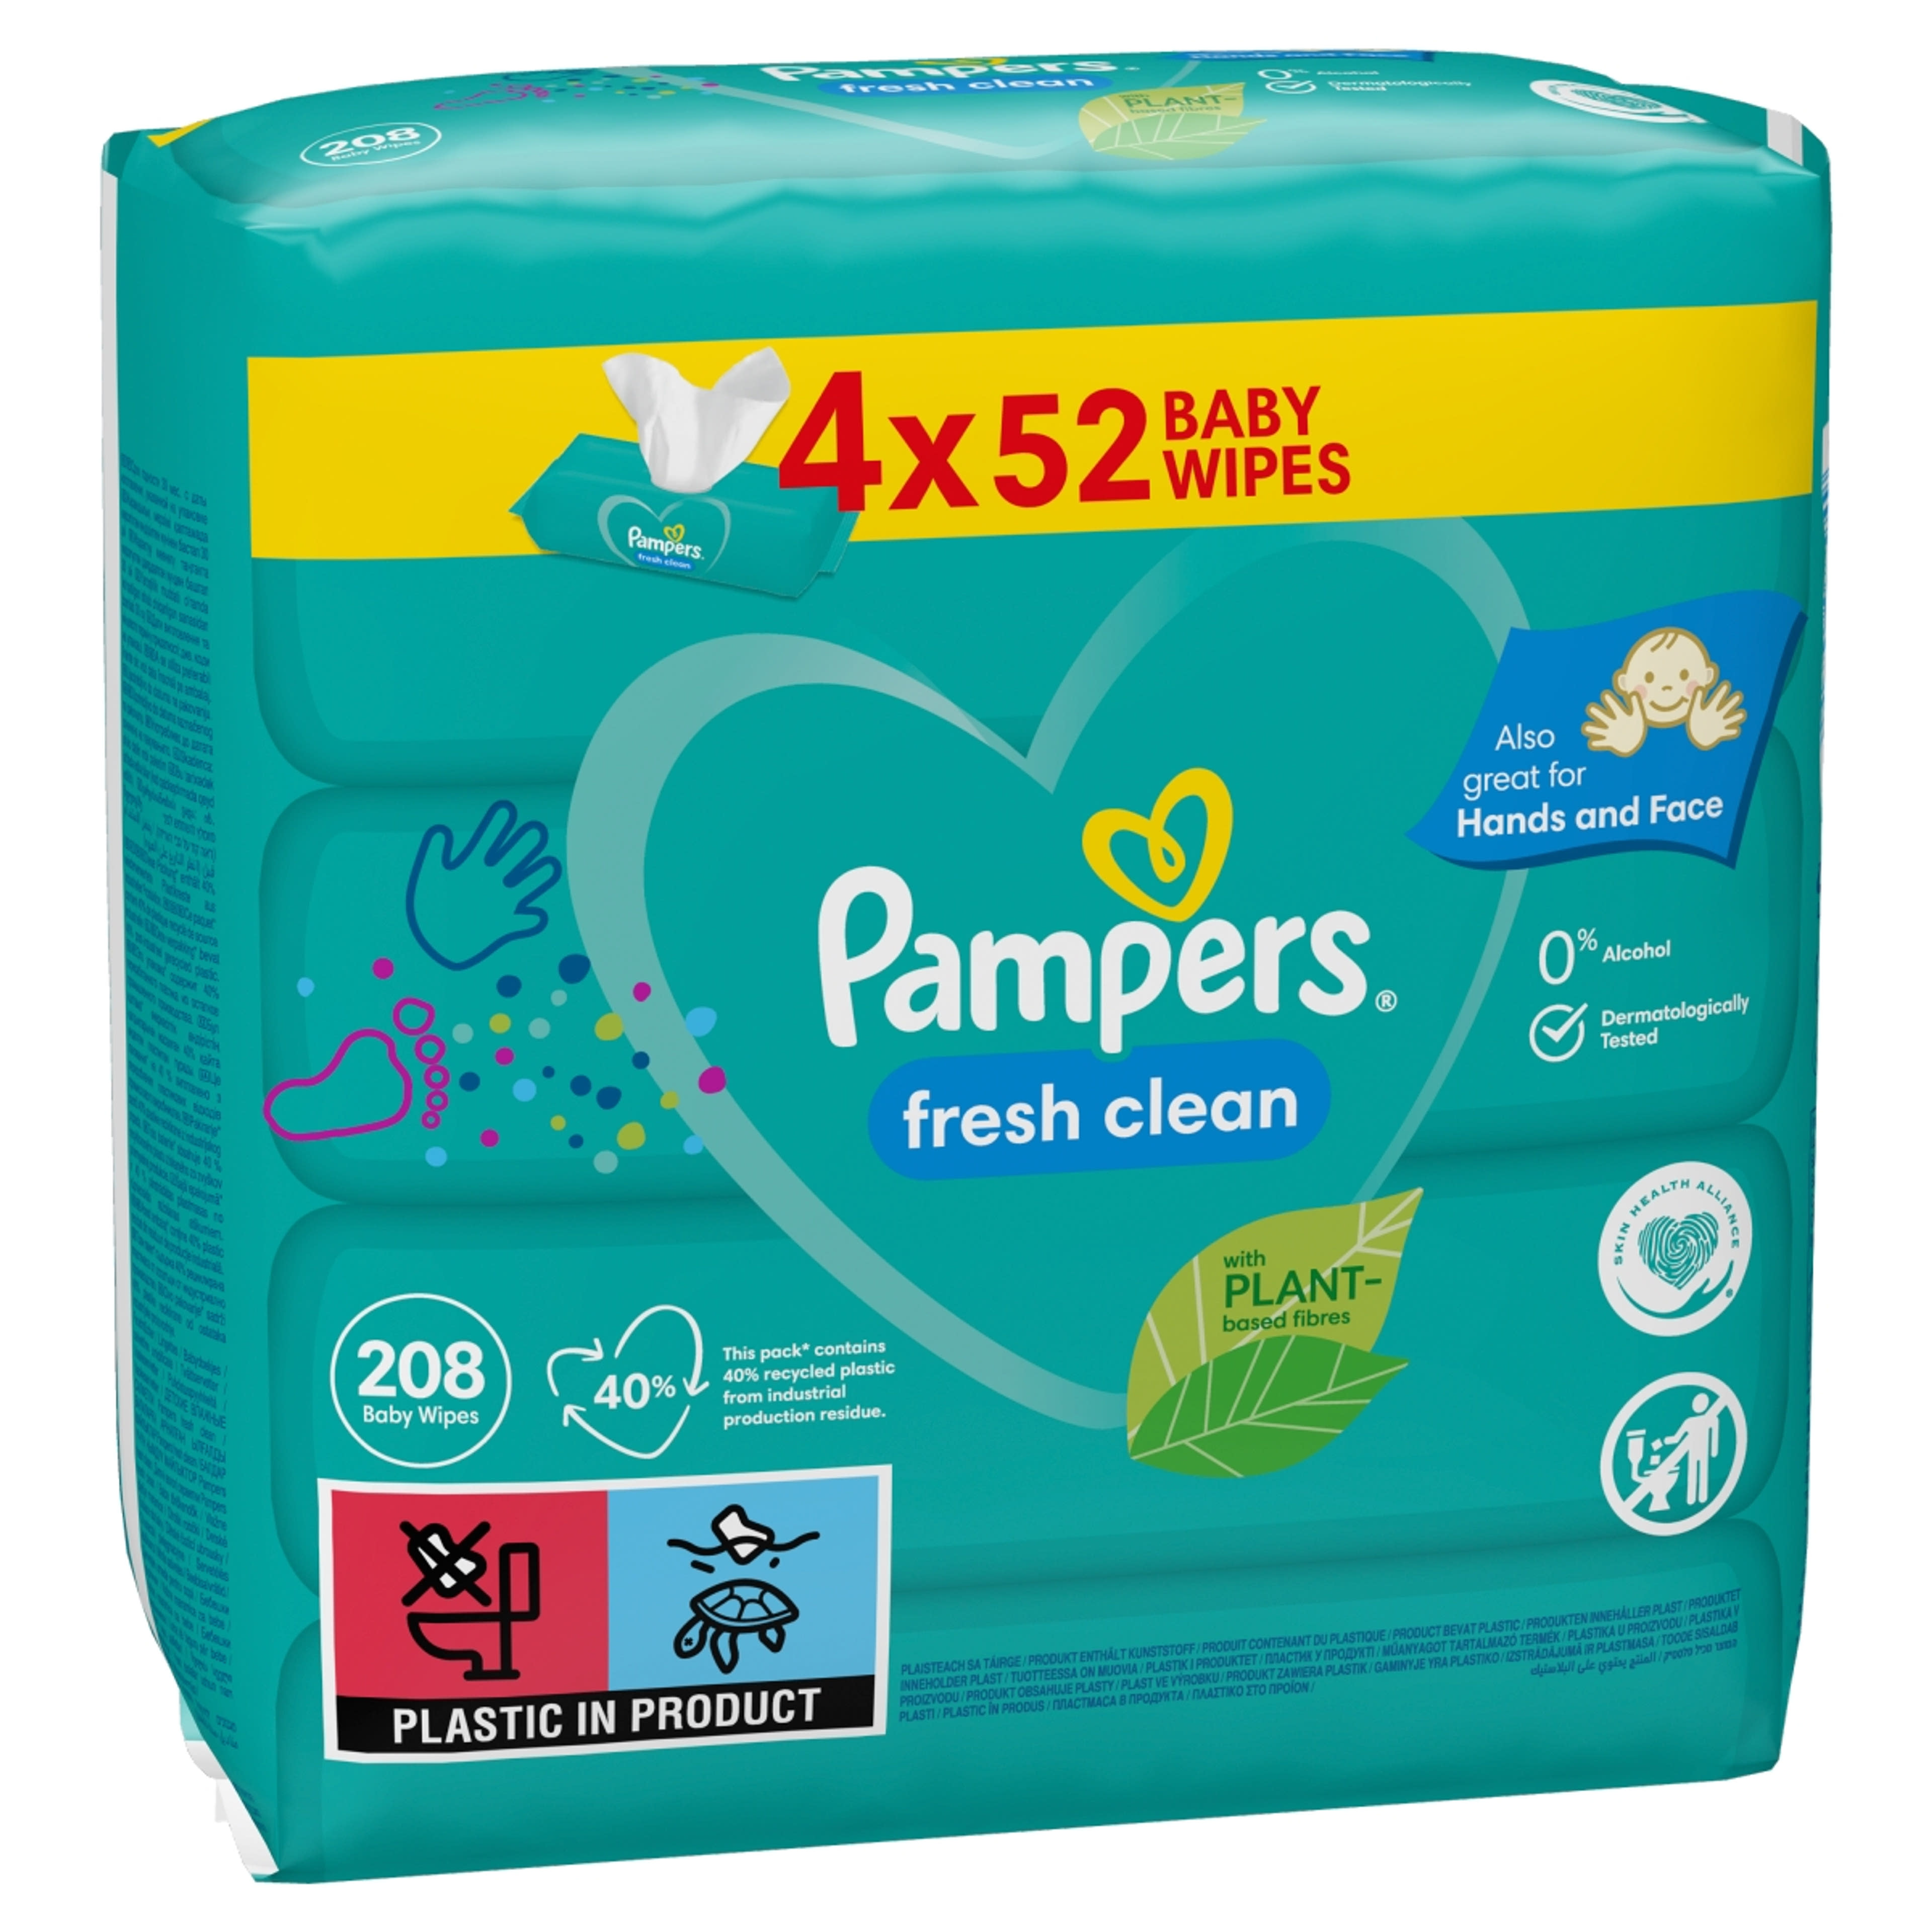 Pampers fresh clean törlőkendő (4x52) - 208 db